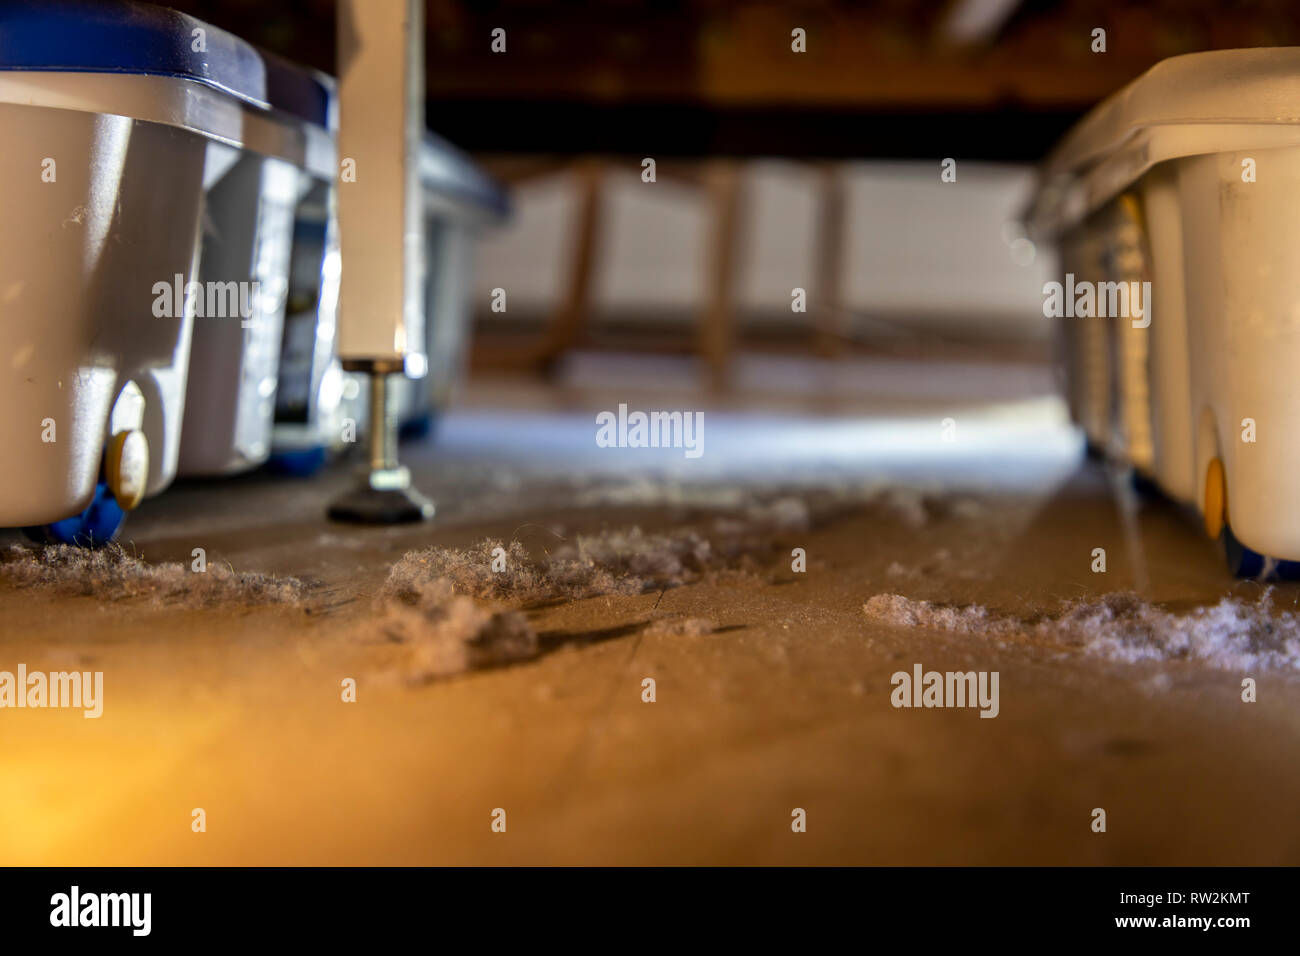 Hausstaub, Wollmäuse, Staubknäule, illustr. sich unter einem Bett  Stockfotografie - Alamy